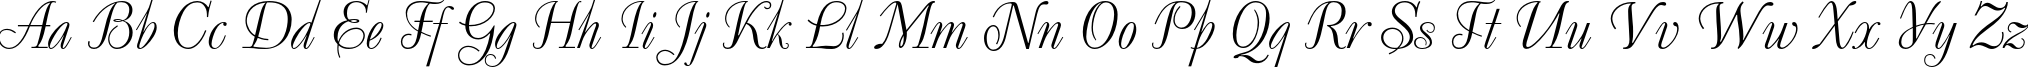 Пример написания английского алфавита шрифтом DecorC